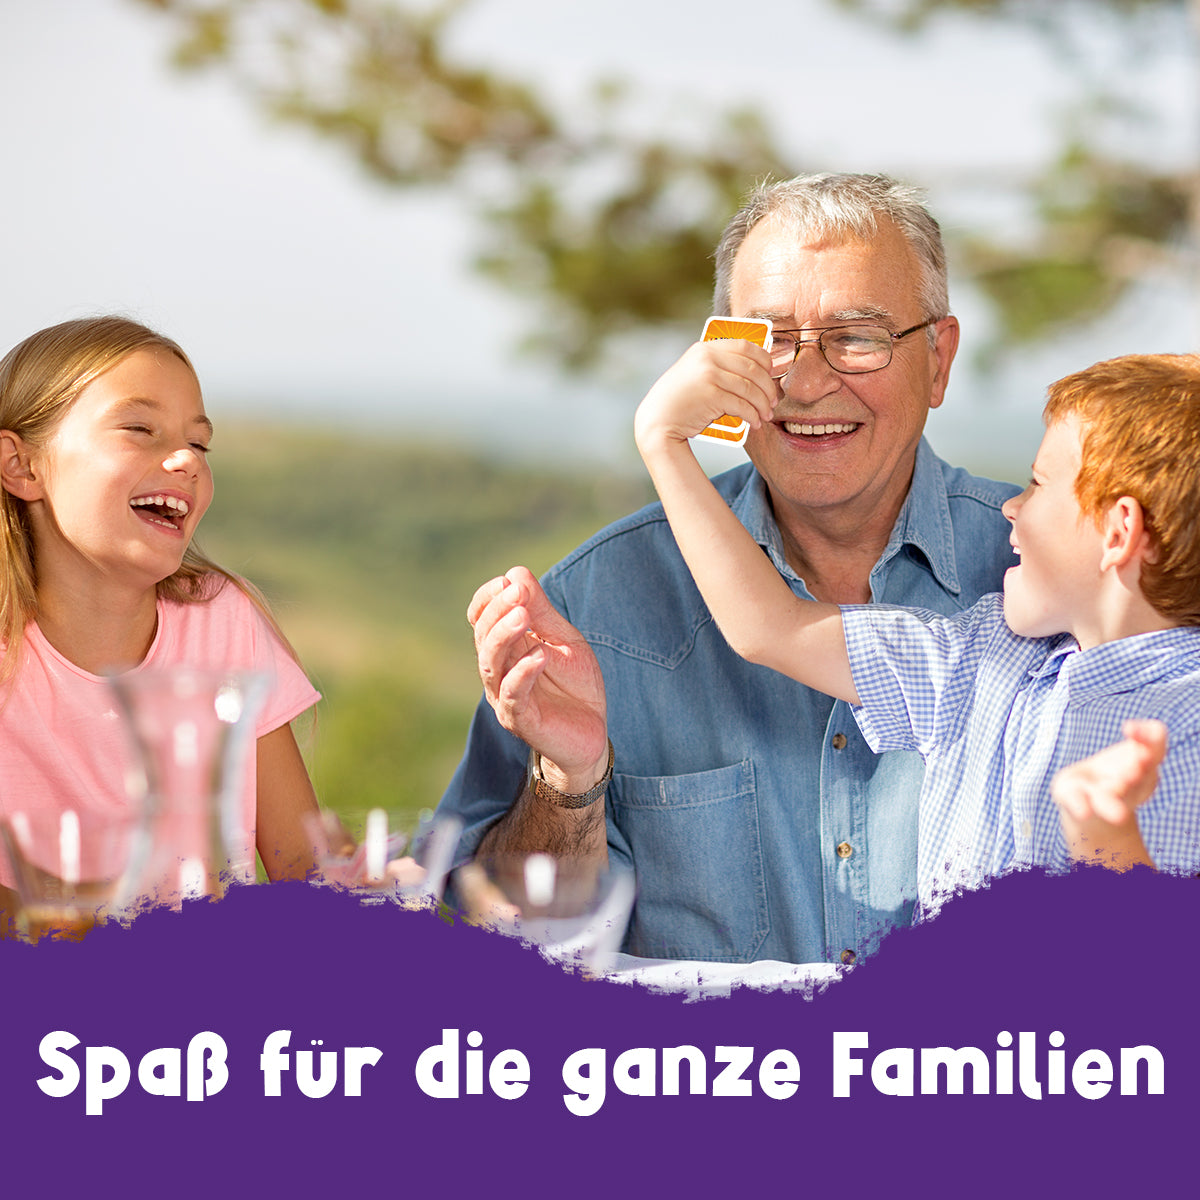 Maxonaut - Schummeln erlaubt - Kartenspiel ab 7 Jahre, Familienspiel